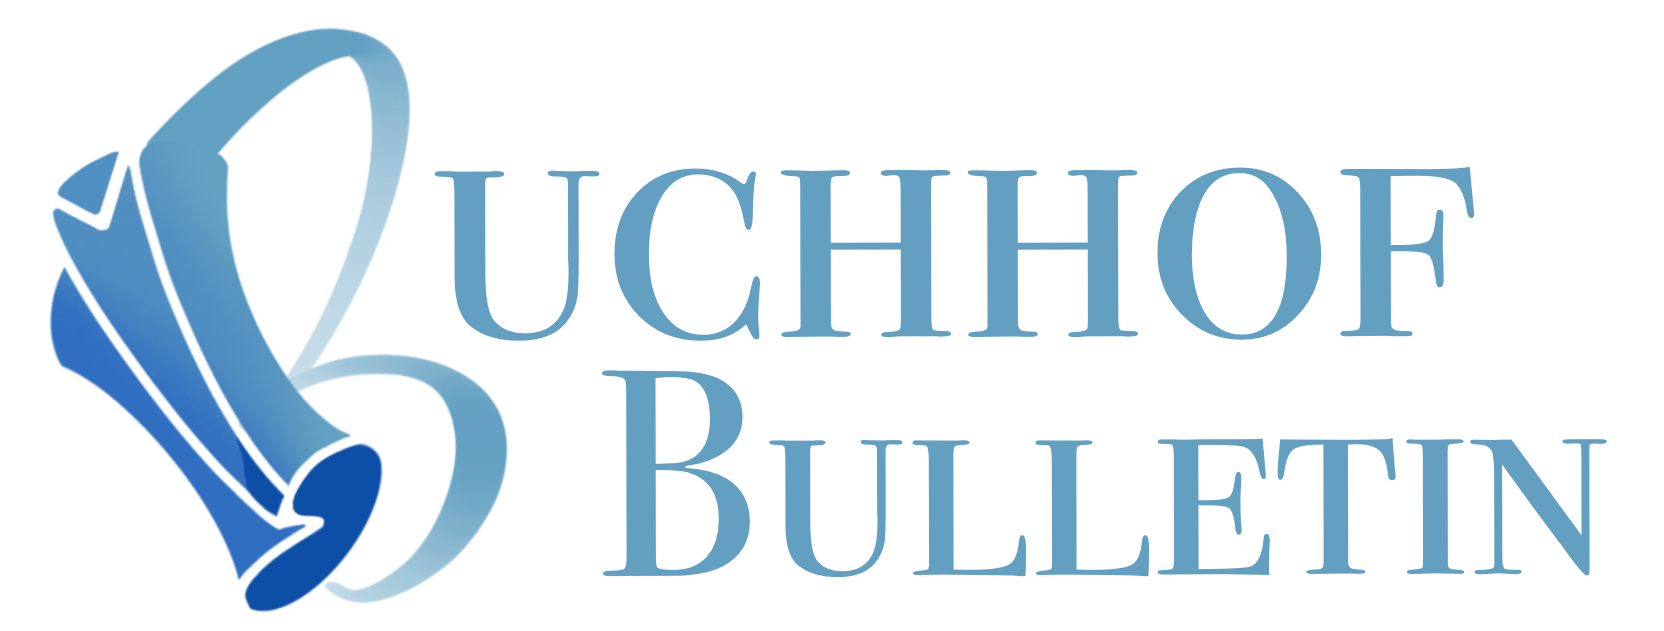 Buchhof Bulletin